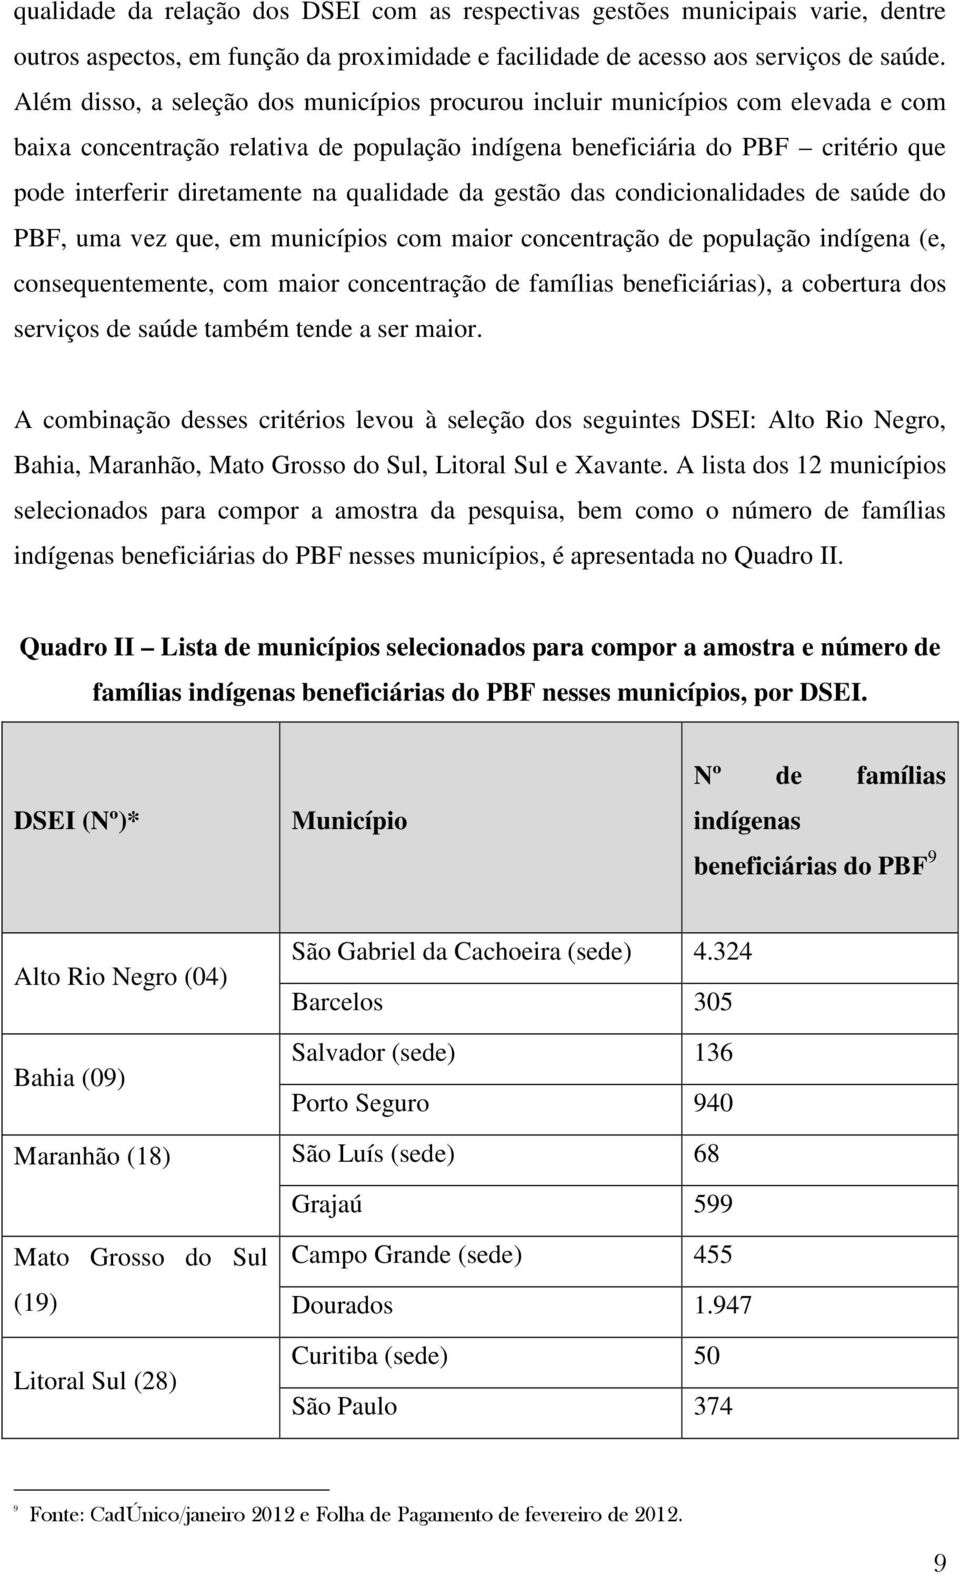 qualidade da gestão das condicionalidades de saúde do PBF, uma vez que, em municípios com maior concentração de população indígena (e, consequentemente, com maior concentração de famílias